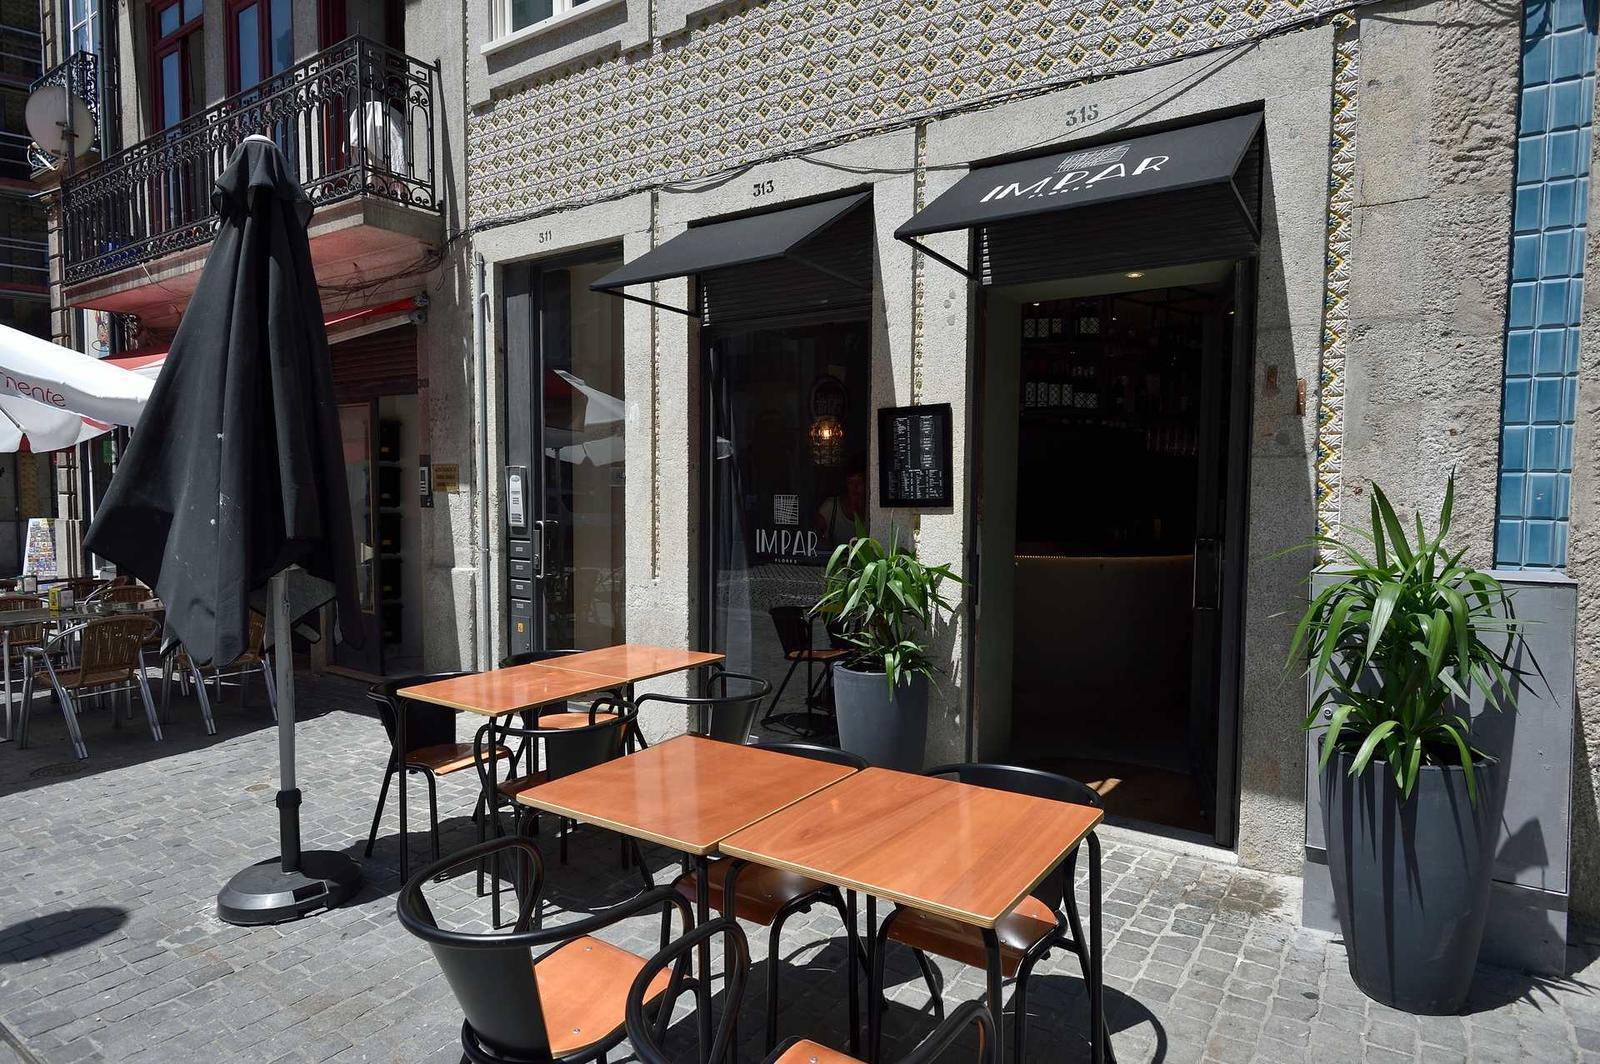 Novos Restaurantes do Porto – Restaurante Impar